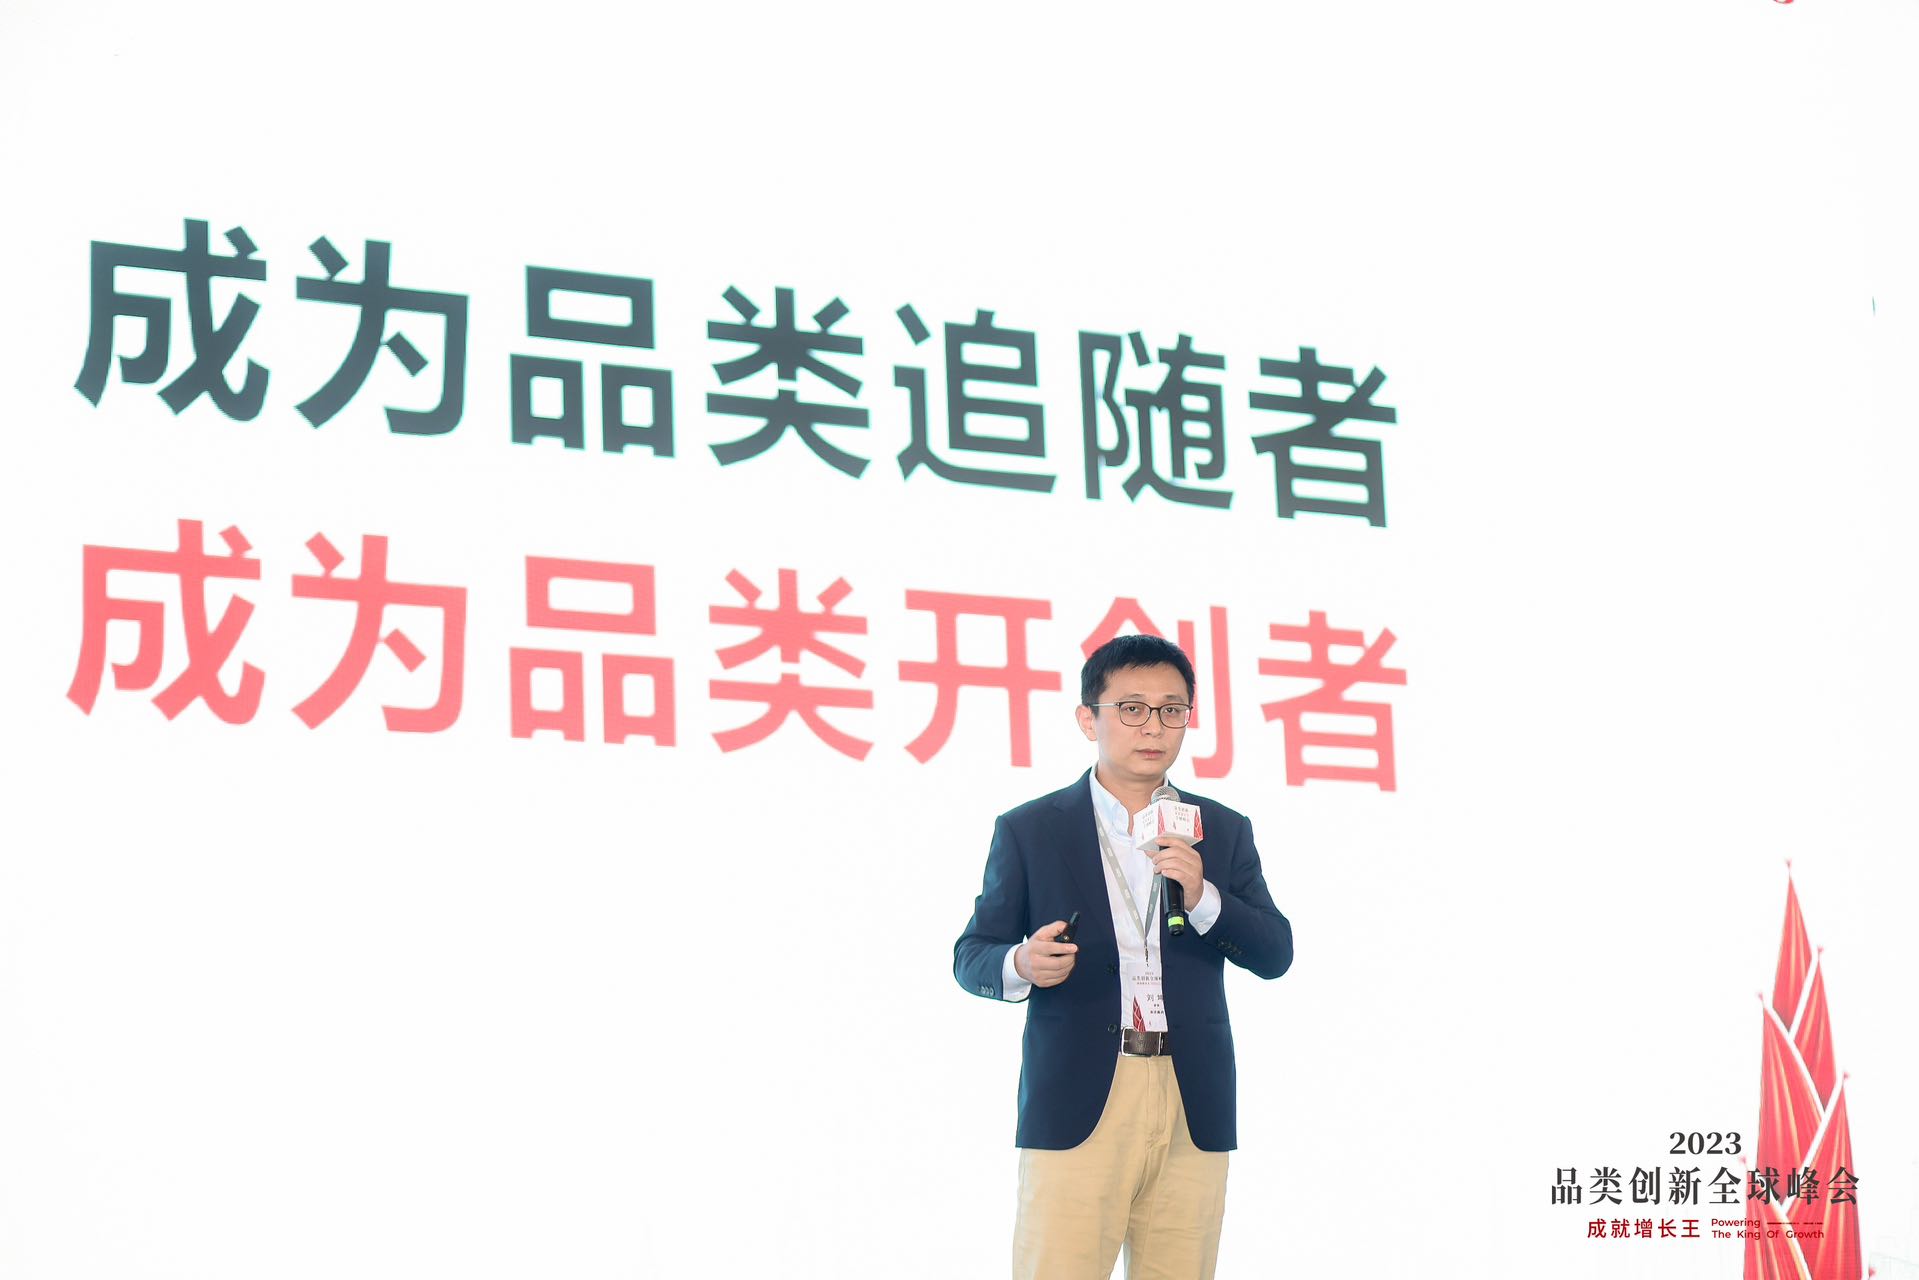 霍曼CEO刘坤强调品类创新：企业实践最易且回报最大的战略